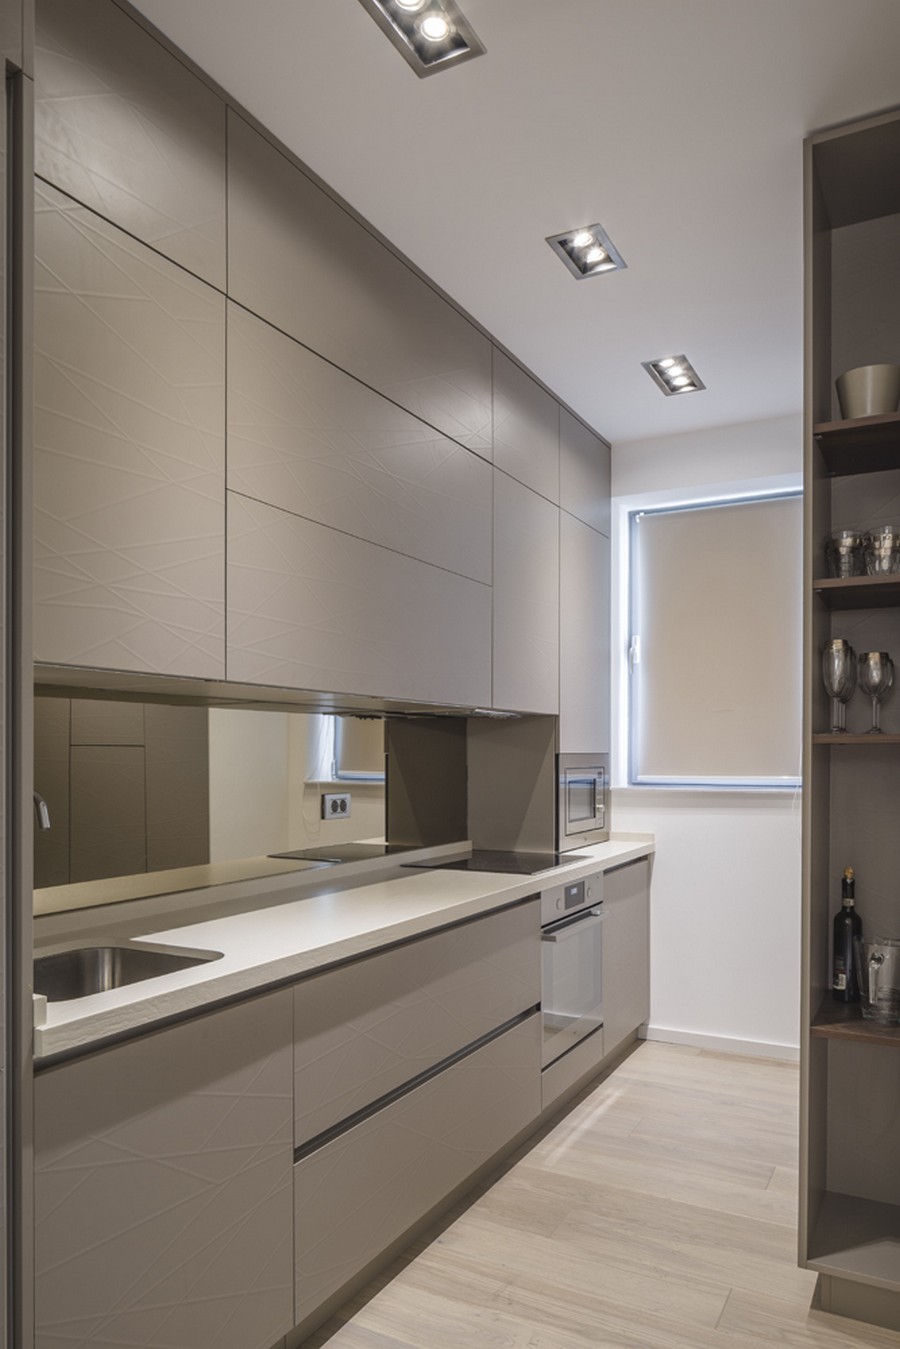 简约 三居 厨房图片来自别墅设计师杨洋在洁白明亮的简约设计的分享